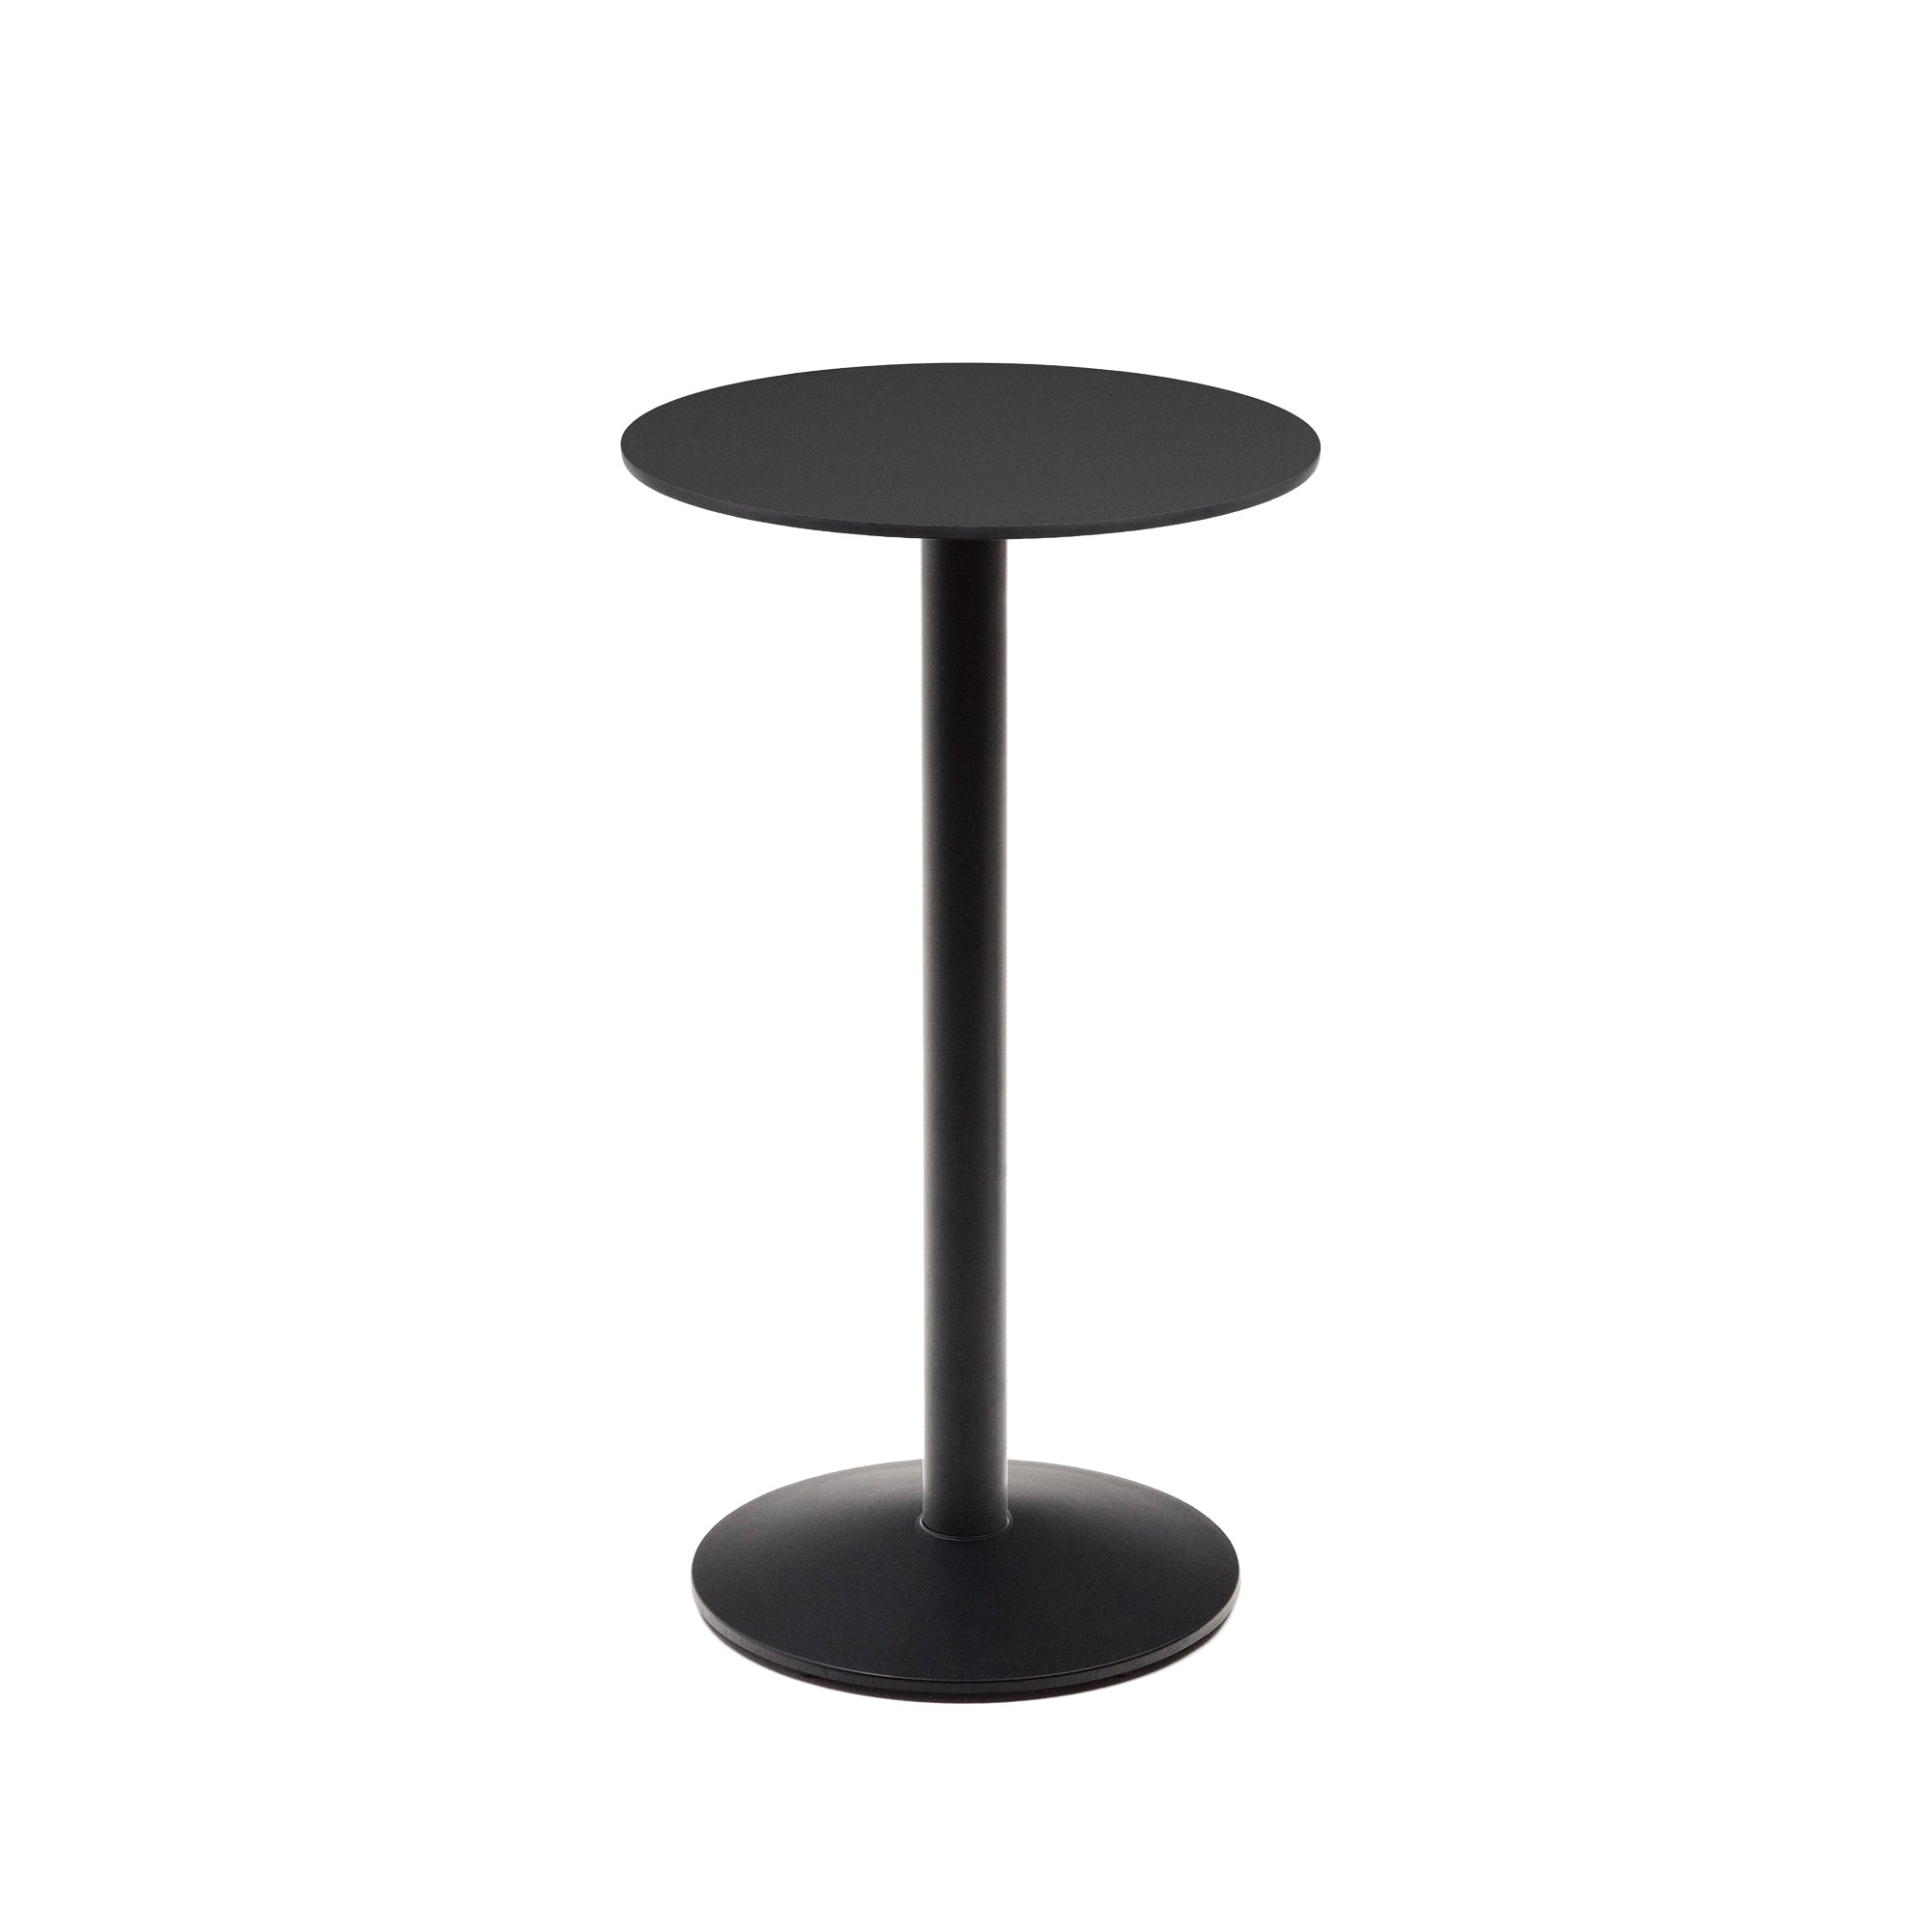 Esilda magas kerek kültéri asztal fekete színben, fémlábbal, festett fekete színben, Ø 60 x 96 cm